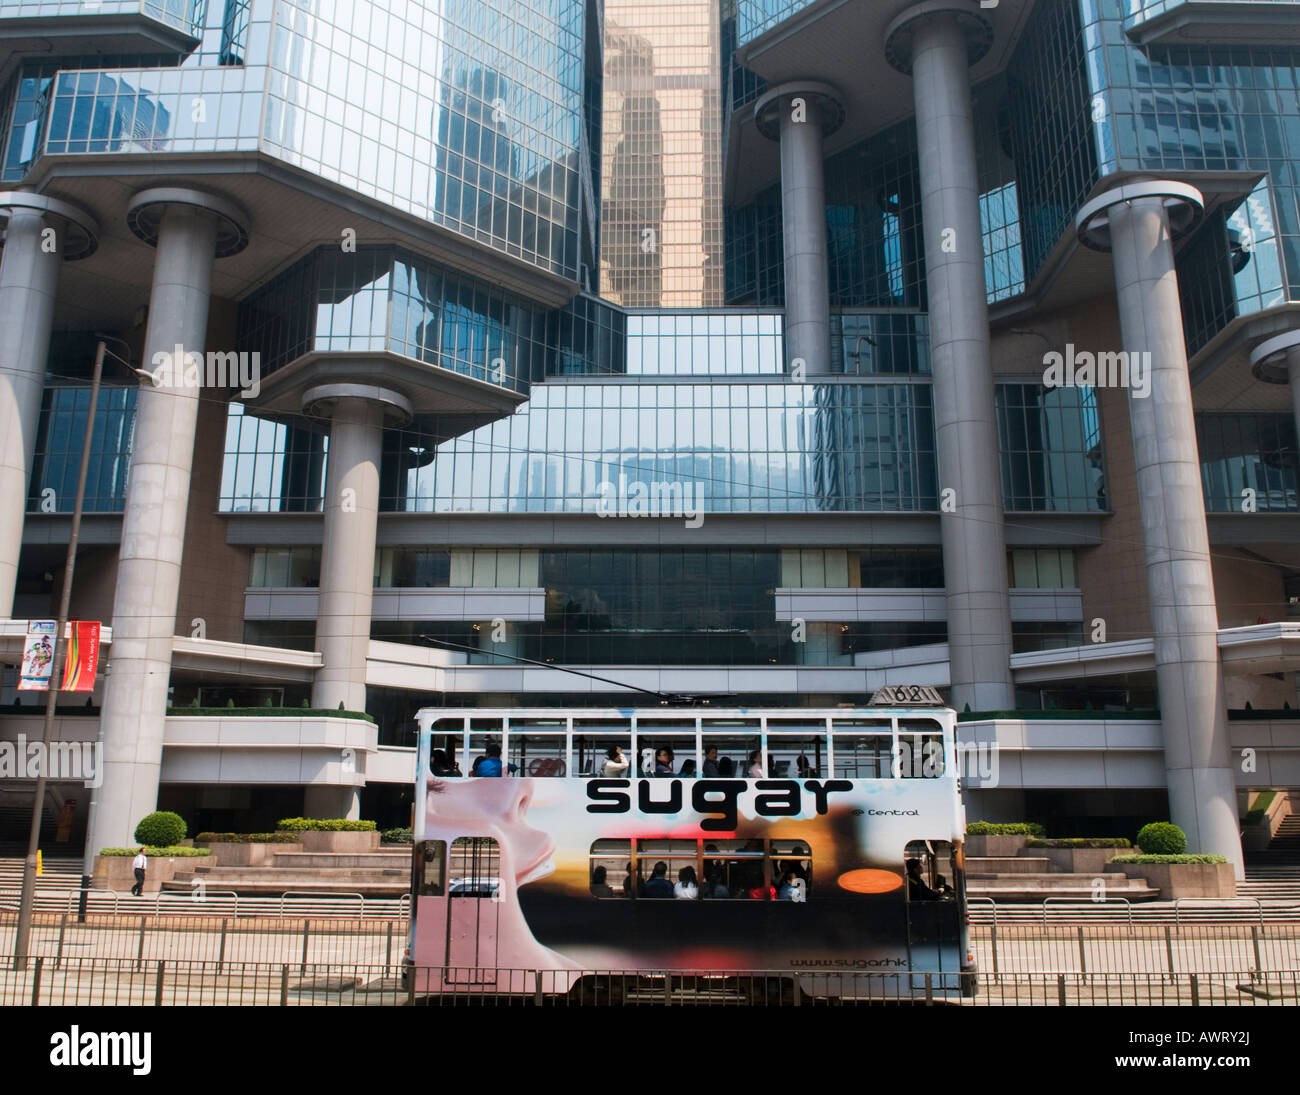 "Tram dans le quartier central des affaires de Hong Kong" Banque D'Images